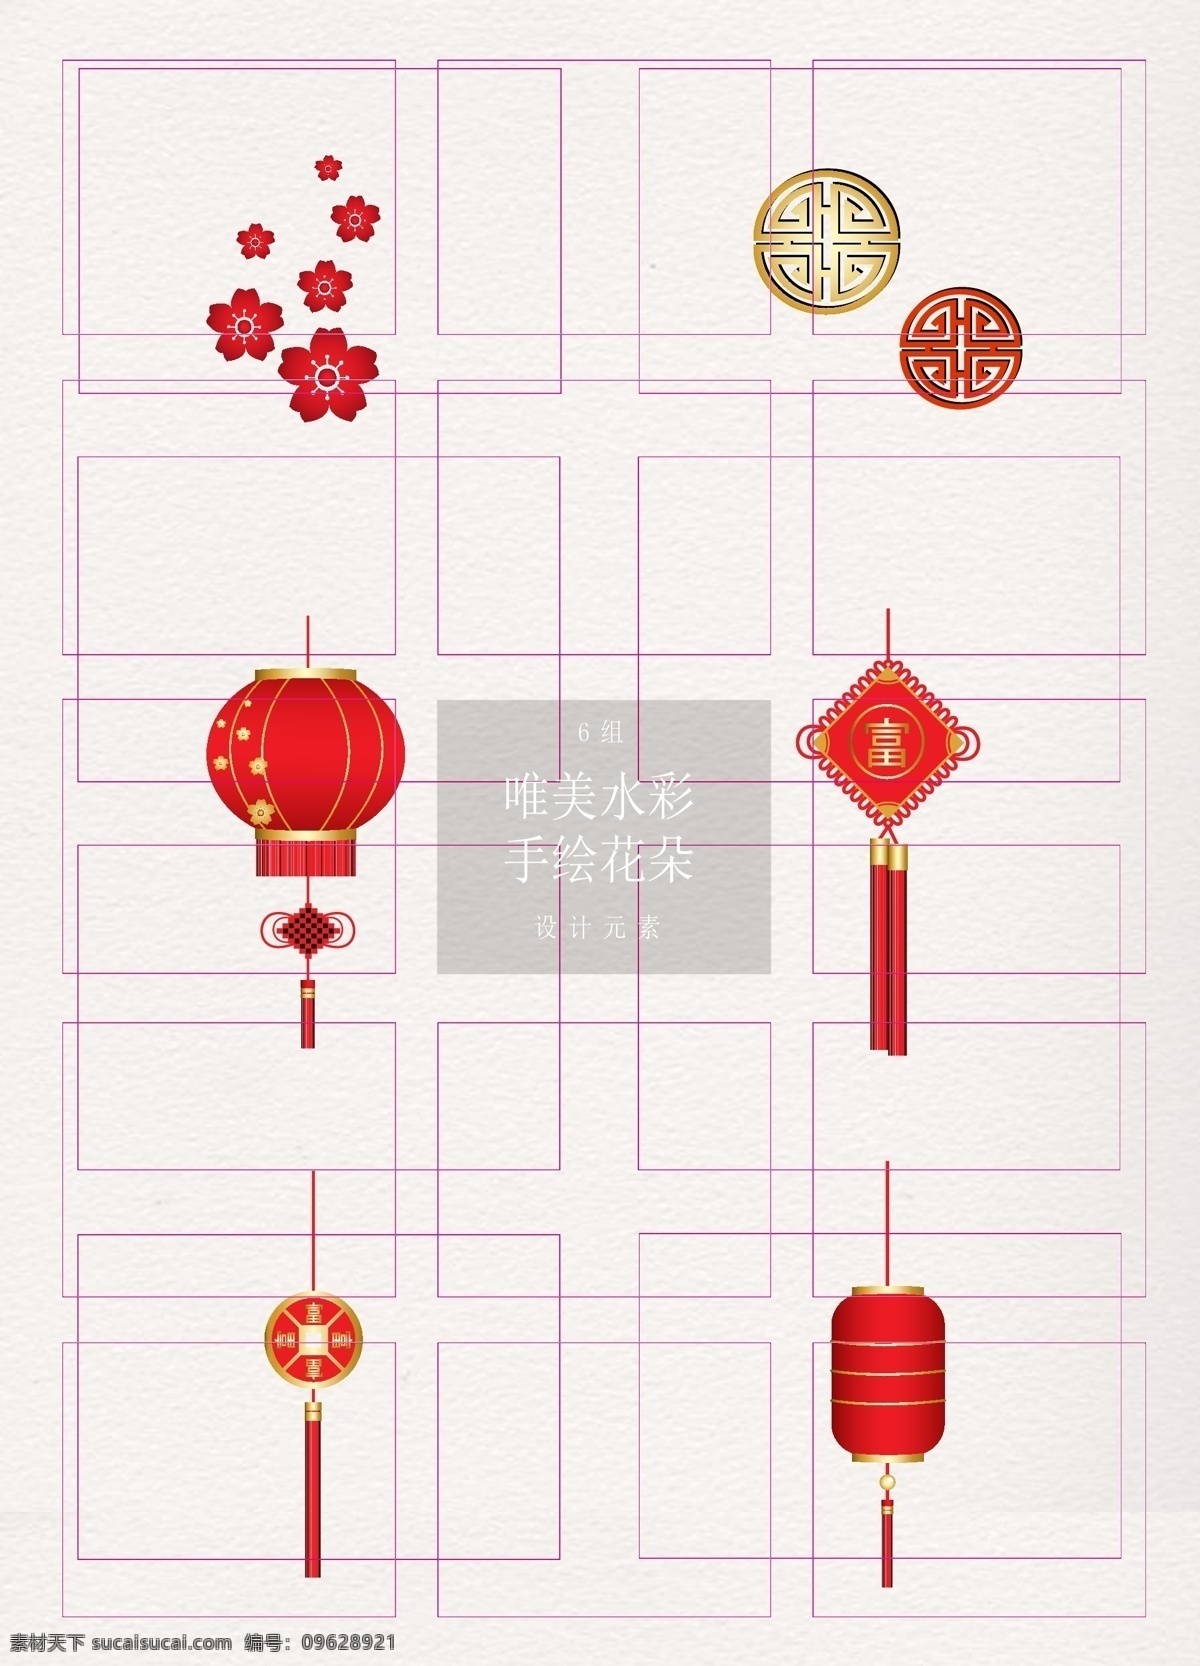 简约 中国 传统文化 元素 矢量图 中国风 灯笼 中国结 卡通 传统元素 窗花 铜板